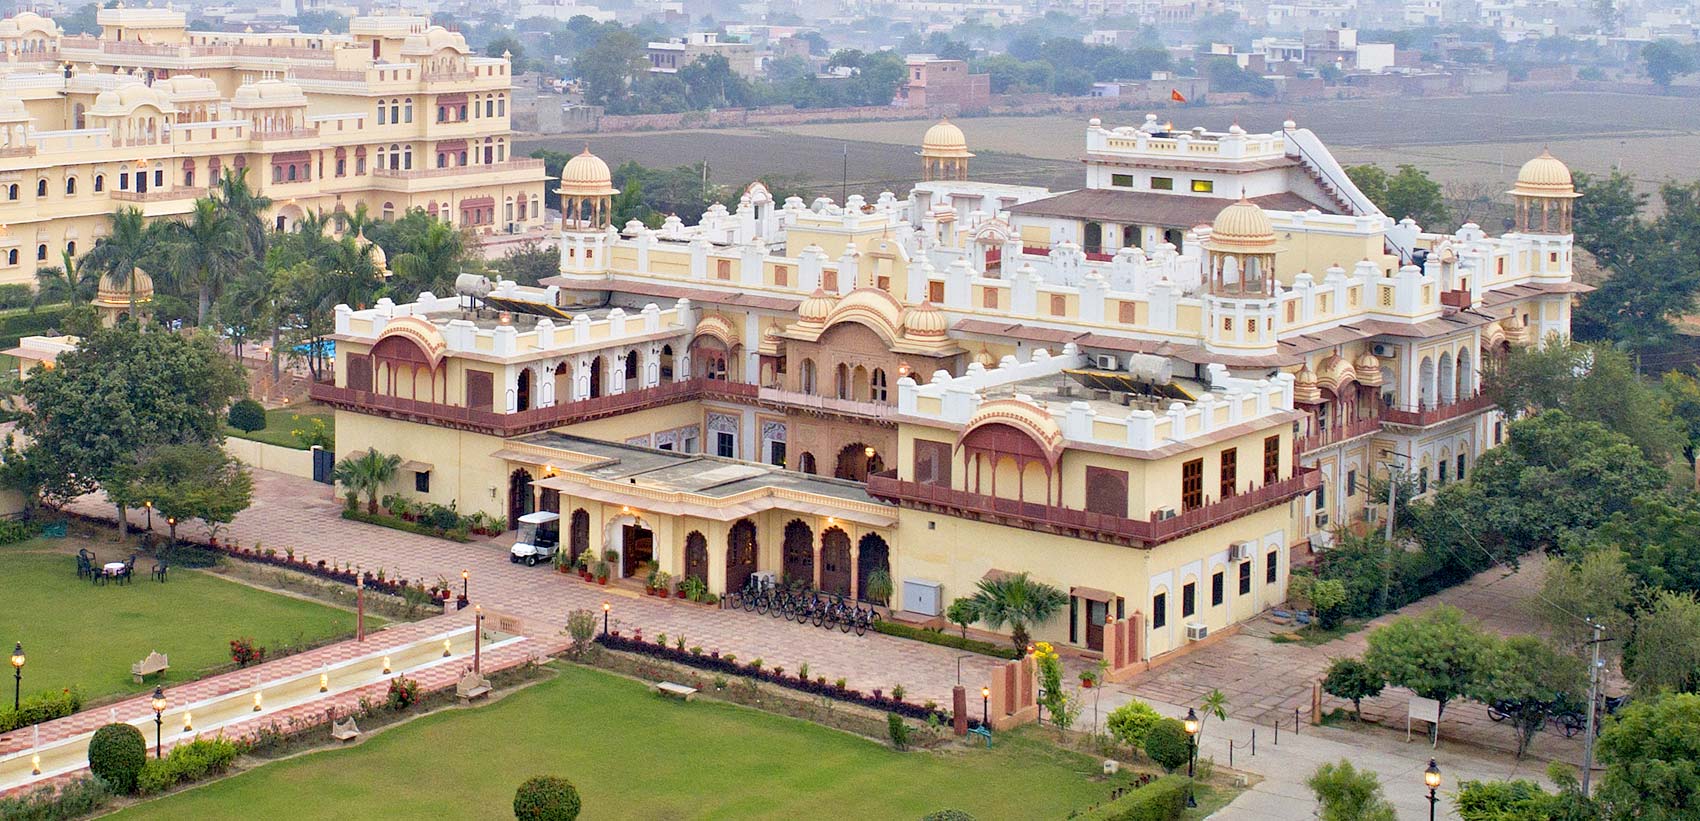 Bharatpur Palace: